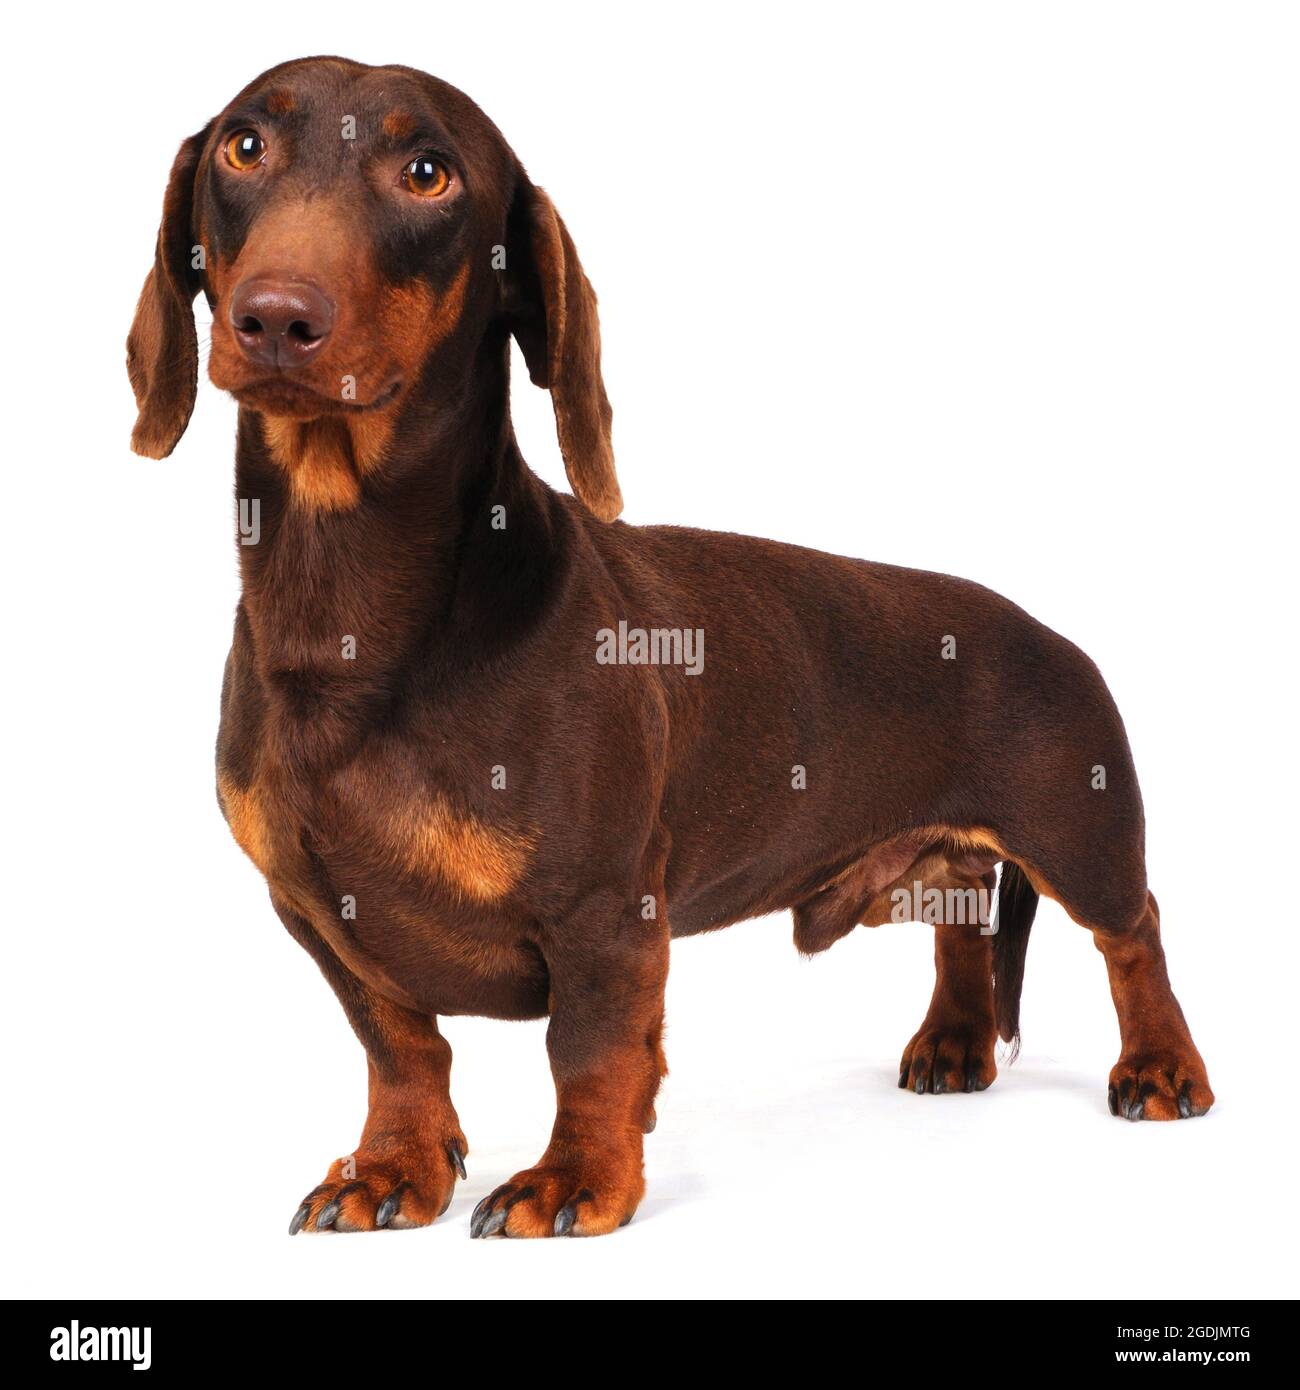 Kurzhaariger Dachshund, kurzhaariger Wursthund, Haushund (Canis lupus f. familiaris), Portait Stockfoto